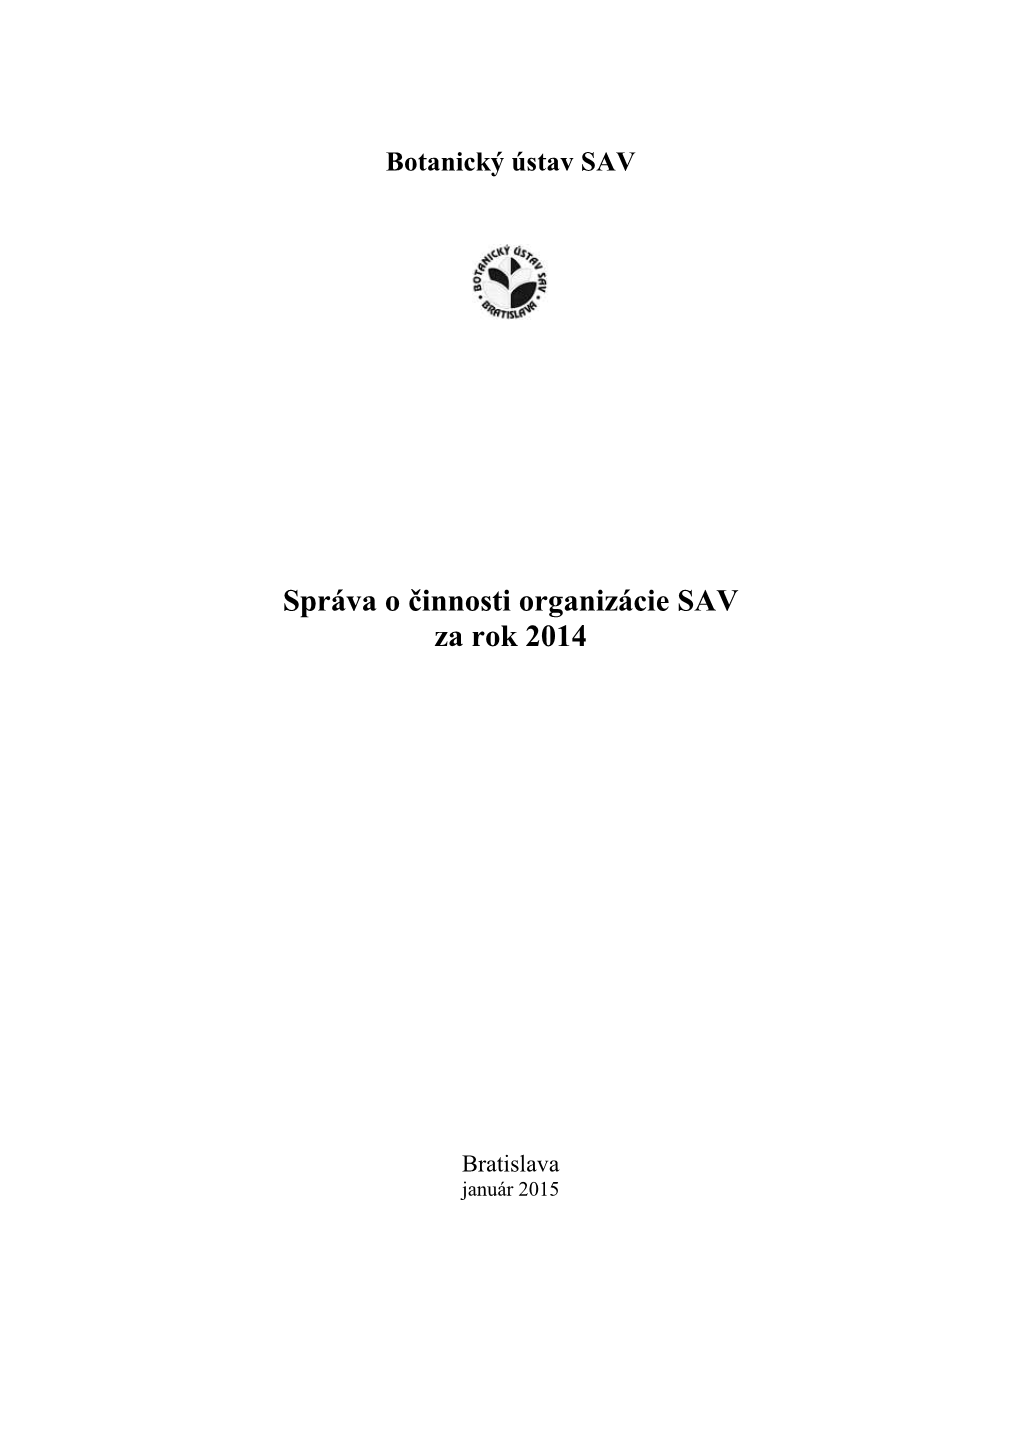 Správa O Činnosti Organizácie SAV Za Rok 2014